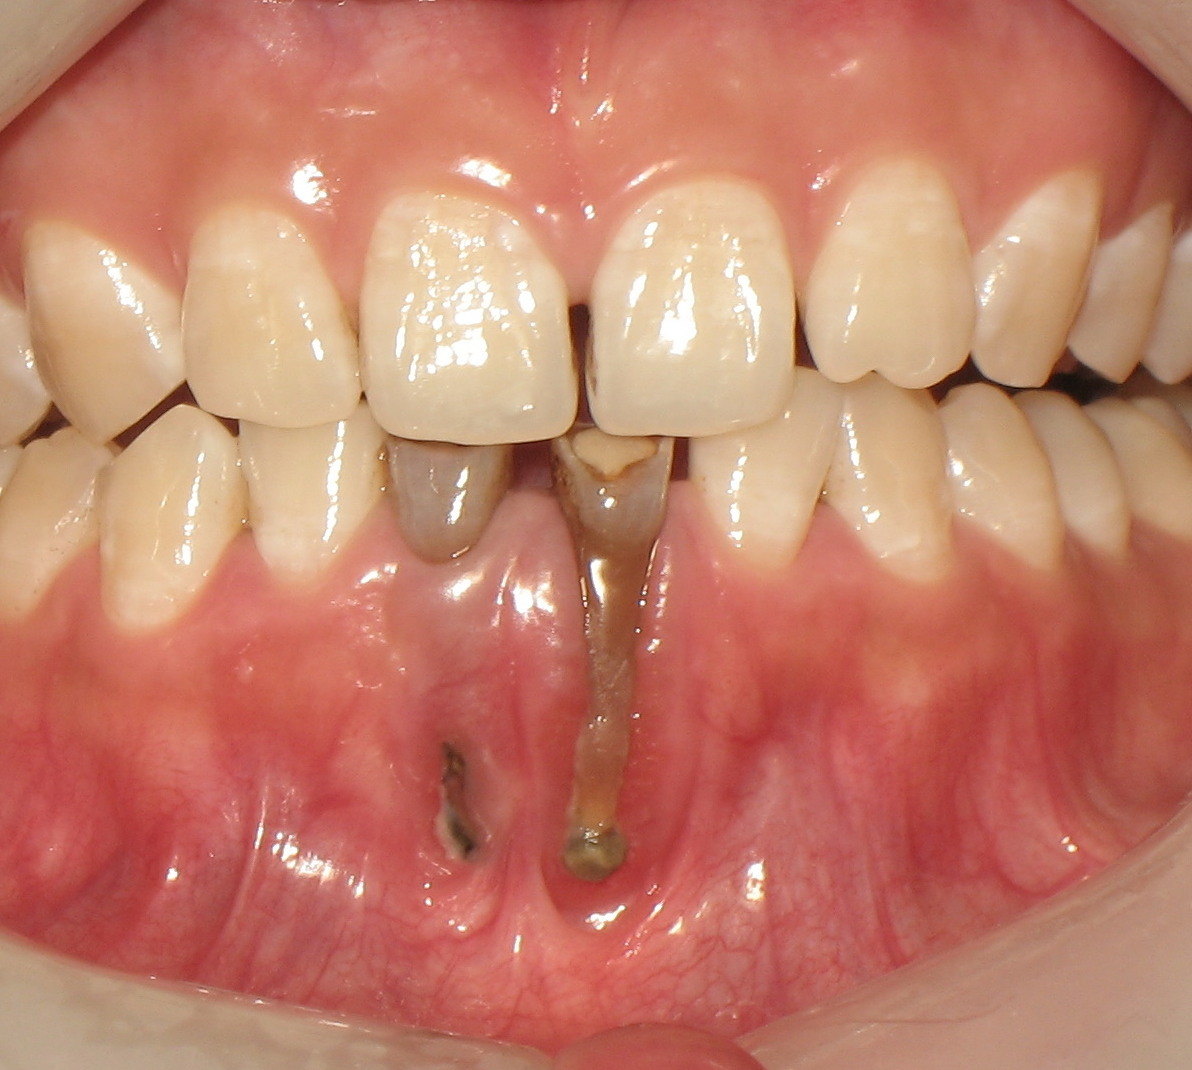 牙龈萎缩与牙槽骨破坏的关系牙周健康的原理1